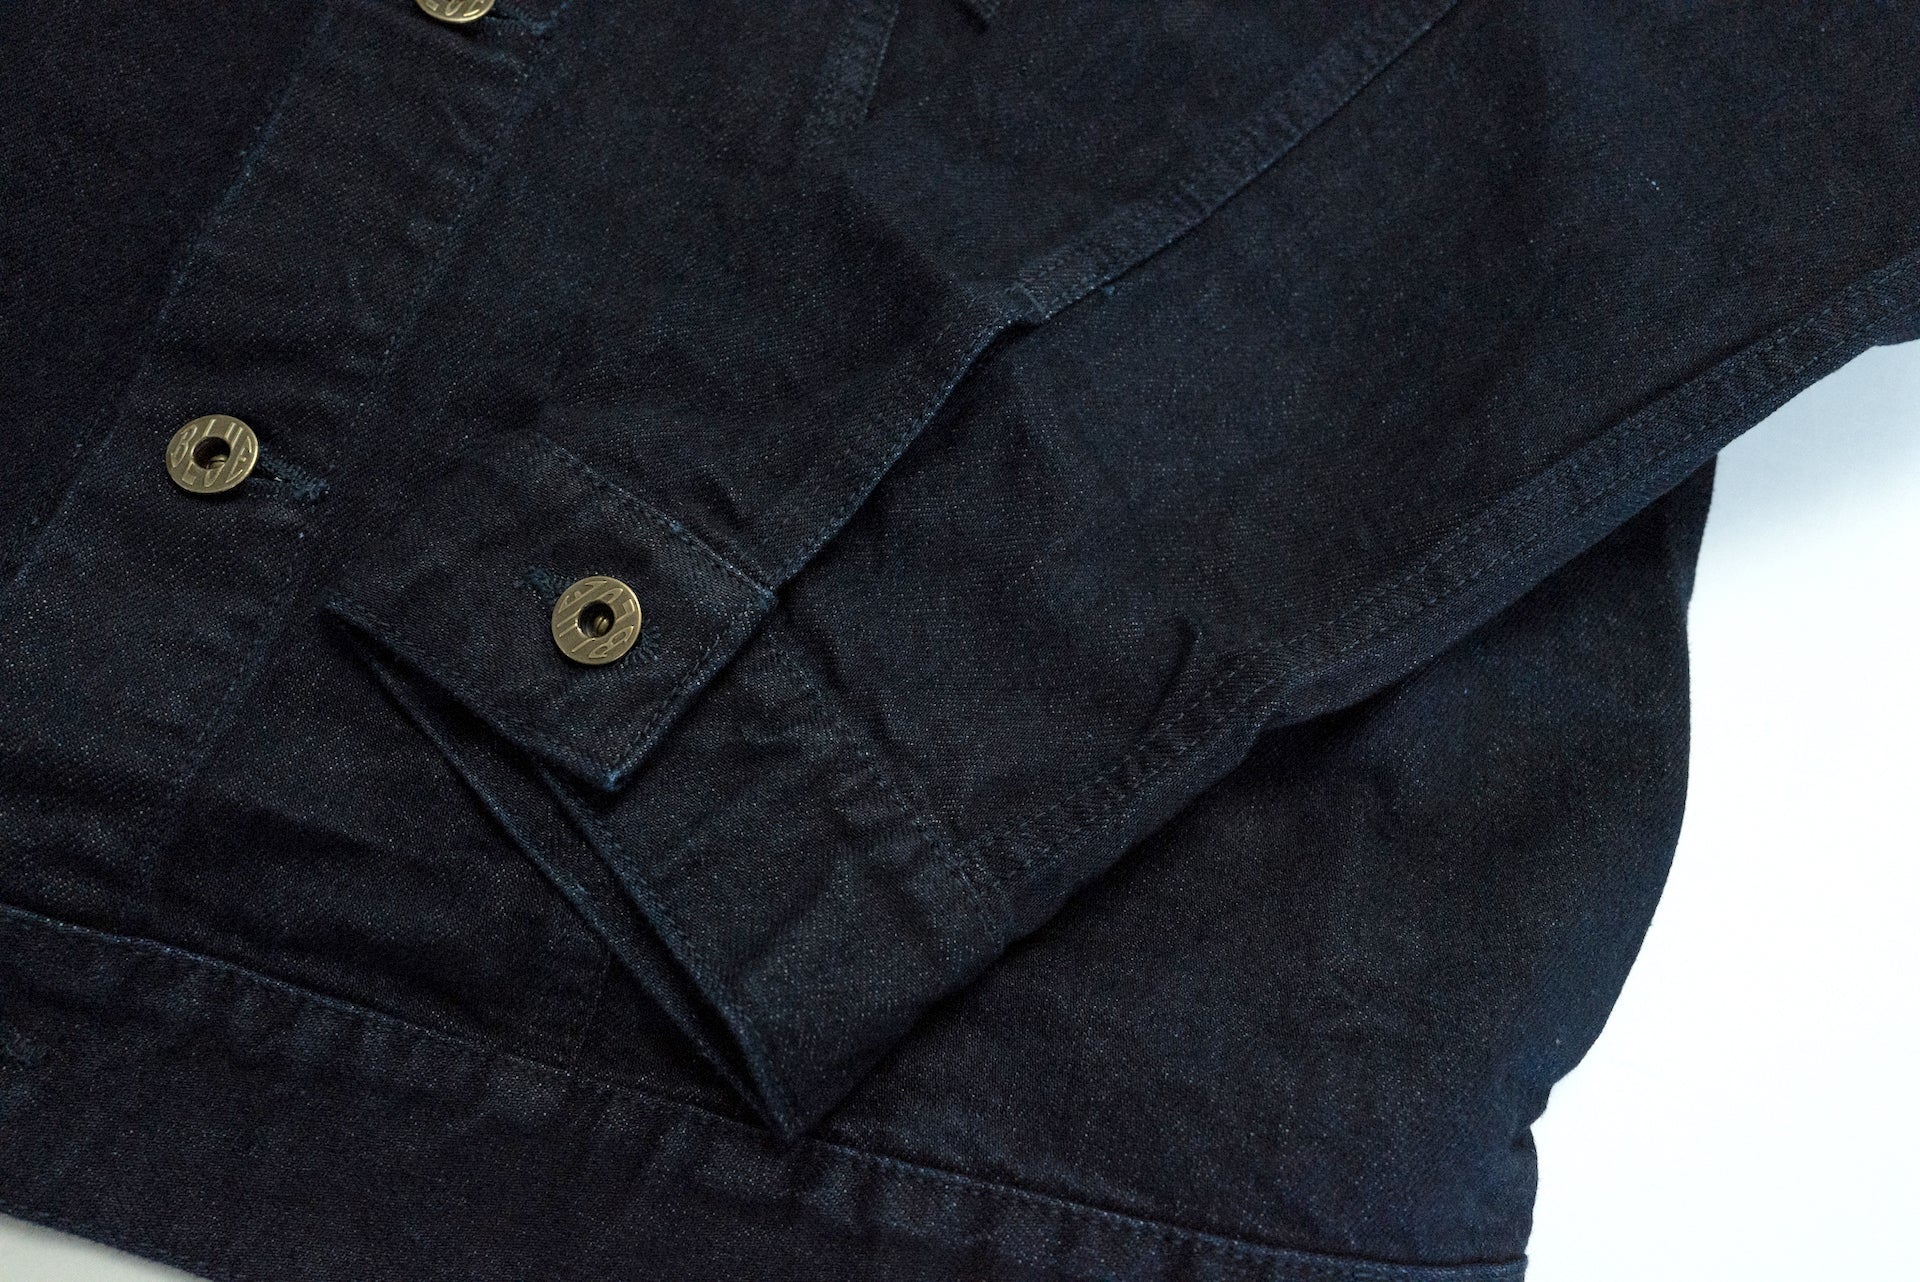 Japan Blue 13.5oz Indigo Dyed "Kouzo" Type 3 Denim Jacket